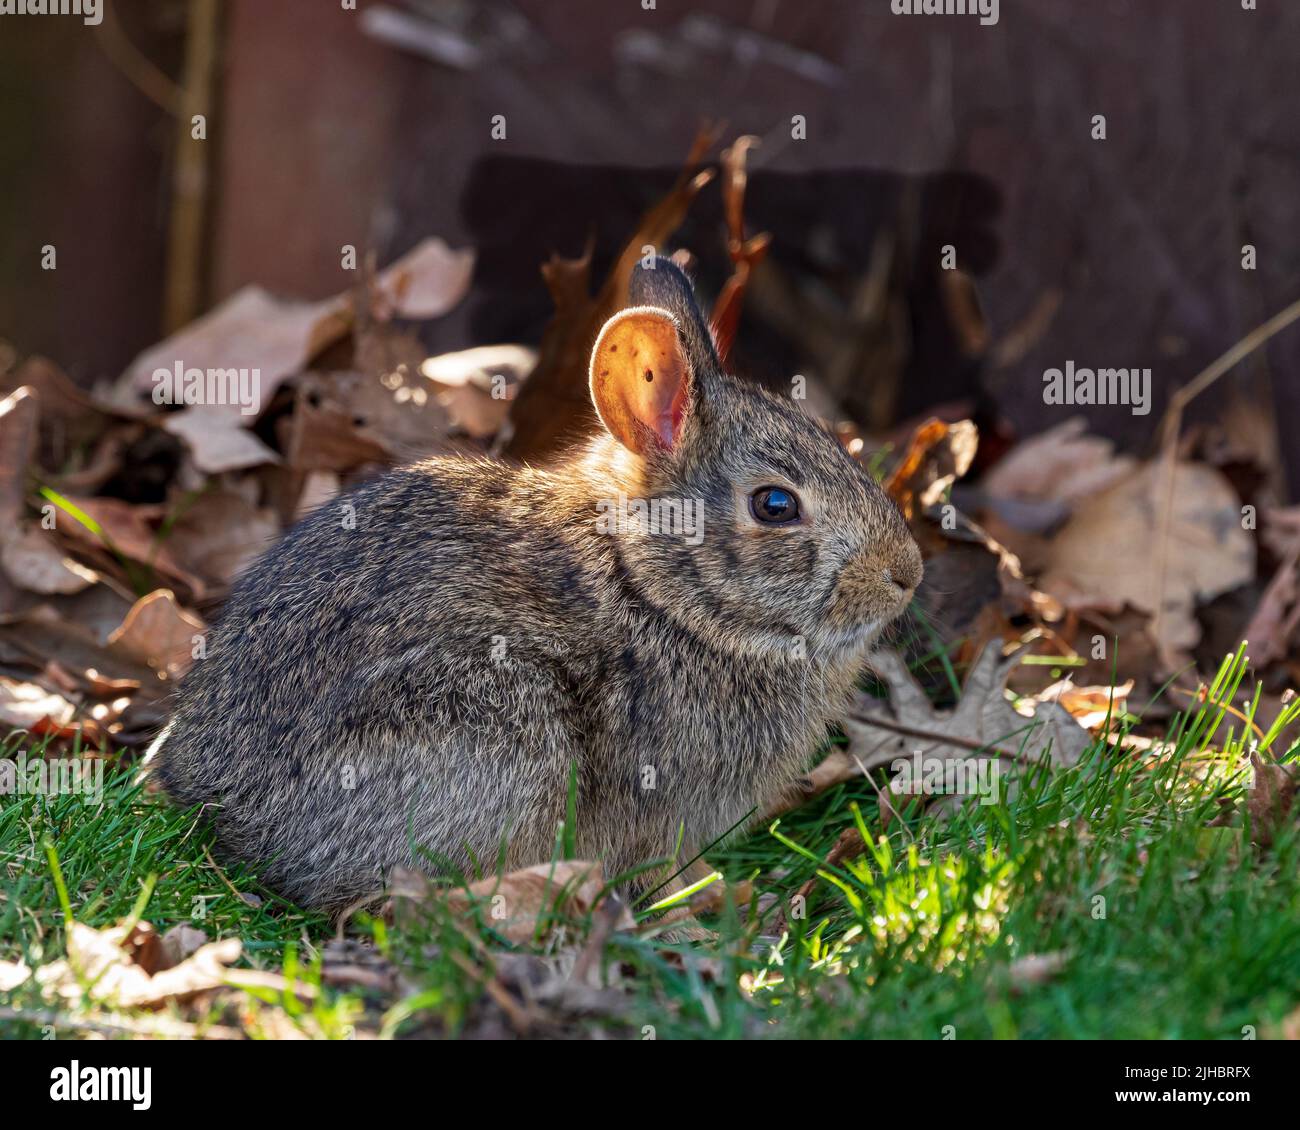 Wilder Hase mit Zecke im Ohr. Konzept zum Schutz von Wildtieren, Tieren und Lebensräumen. Stockfoto